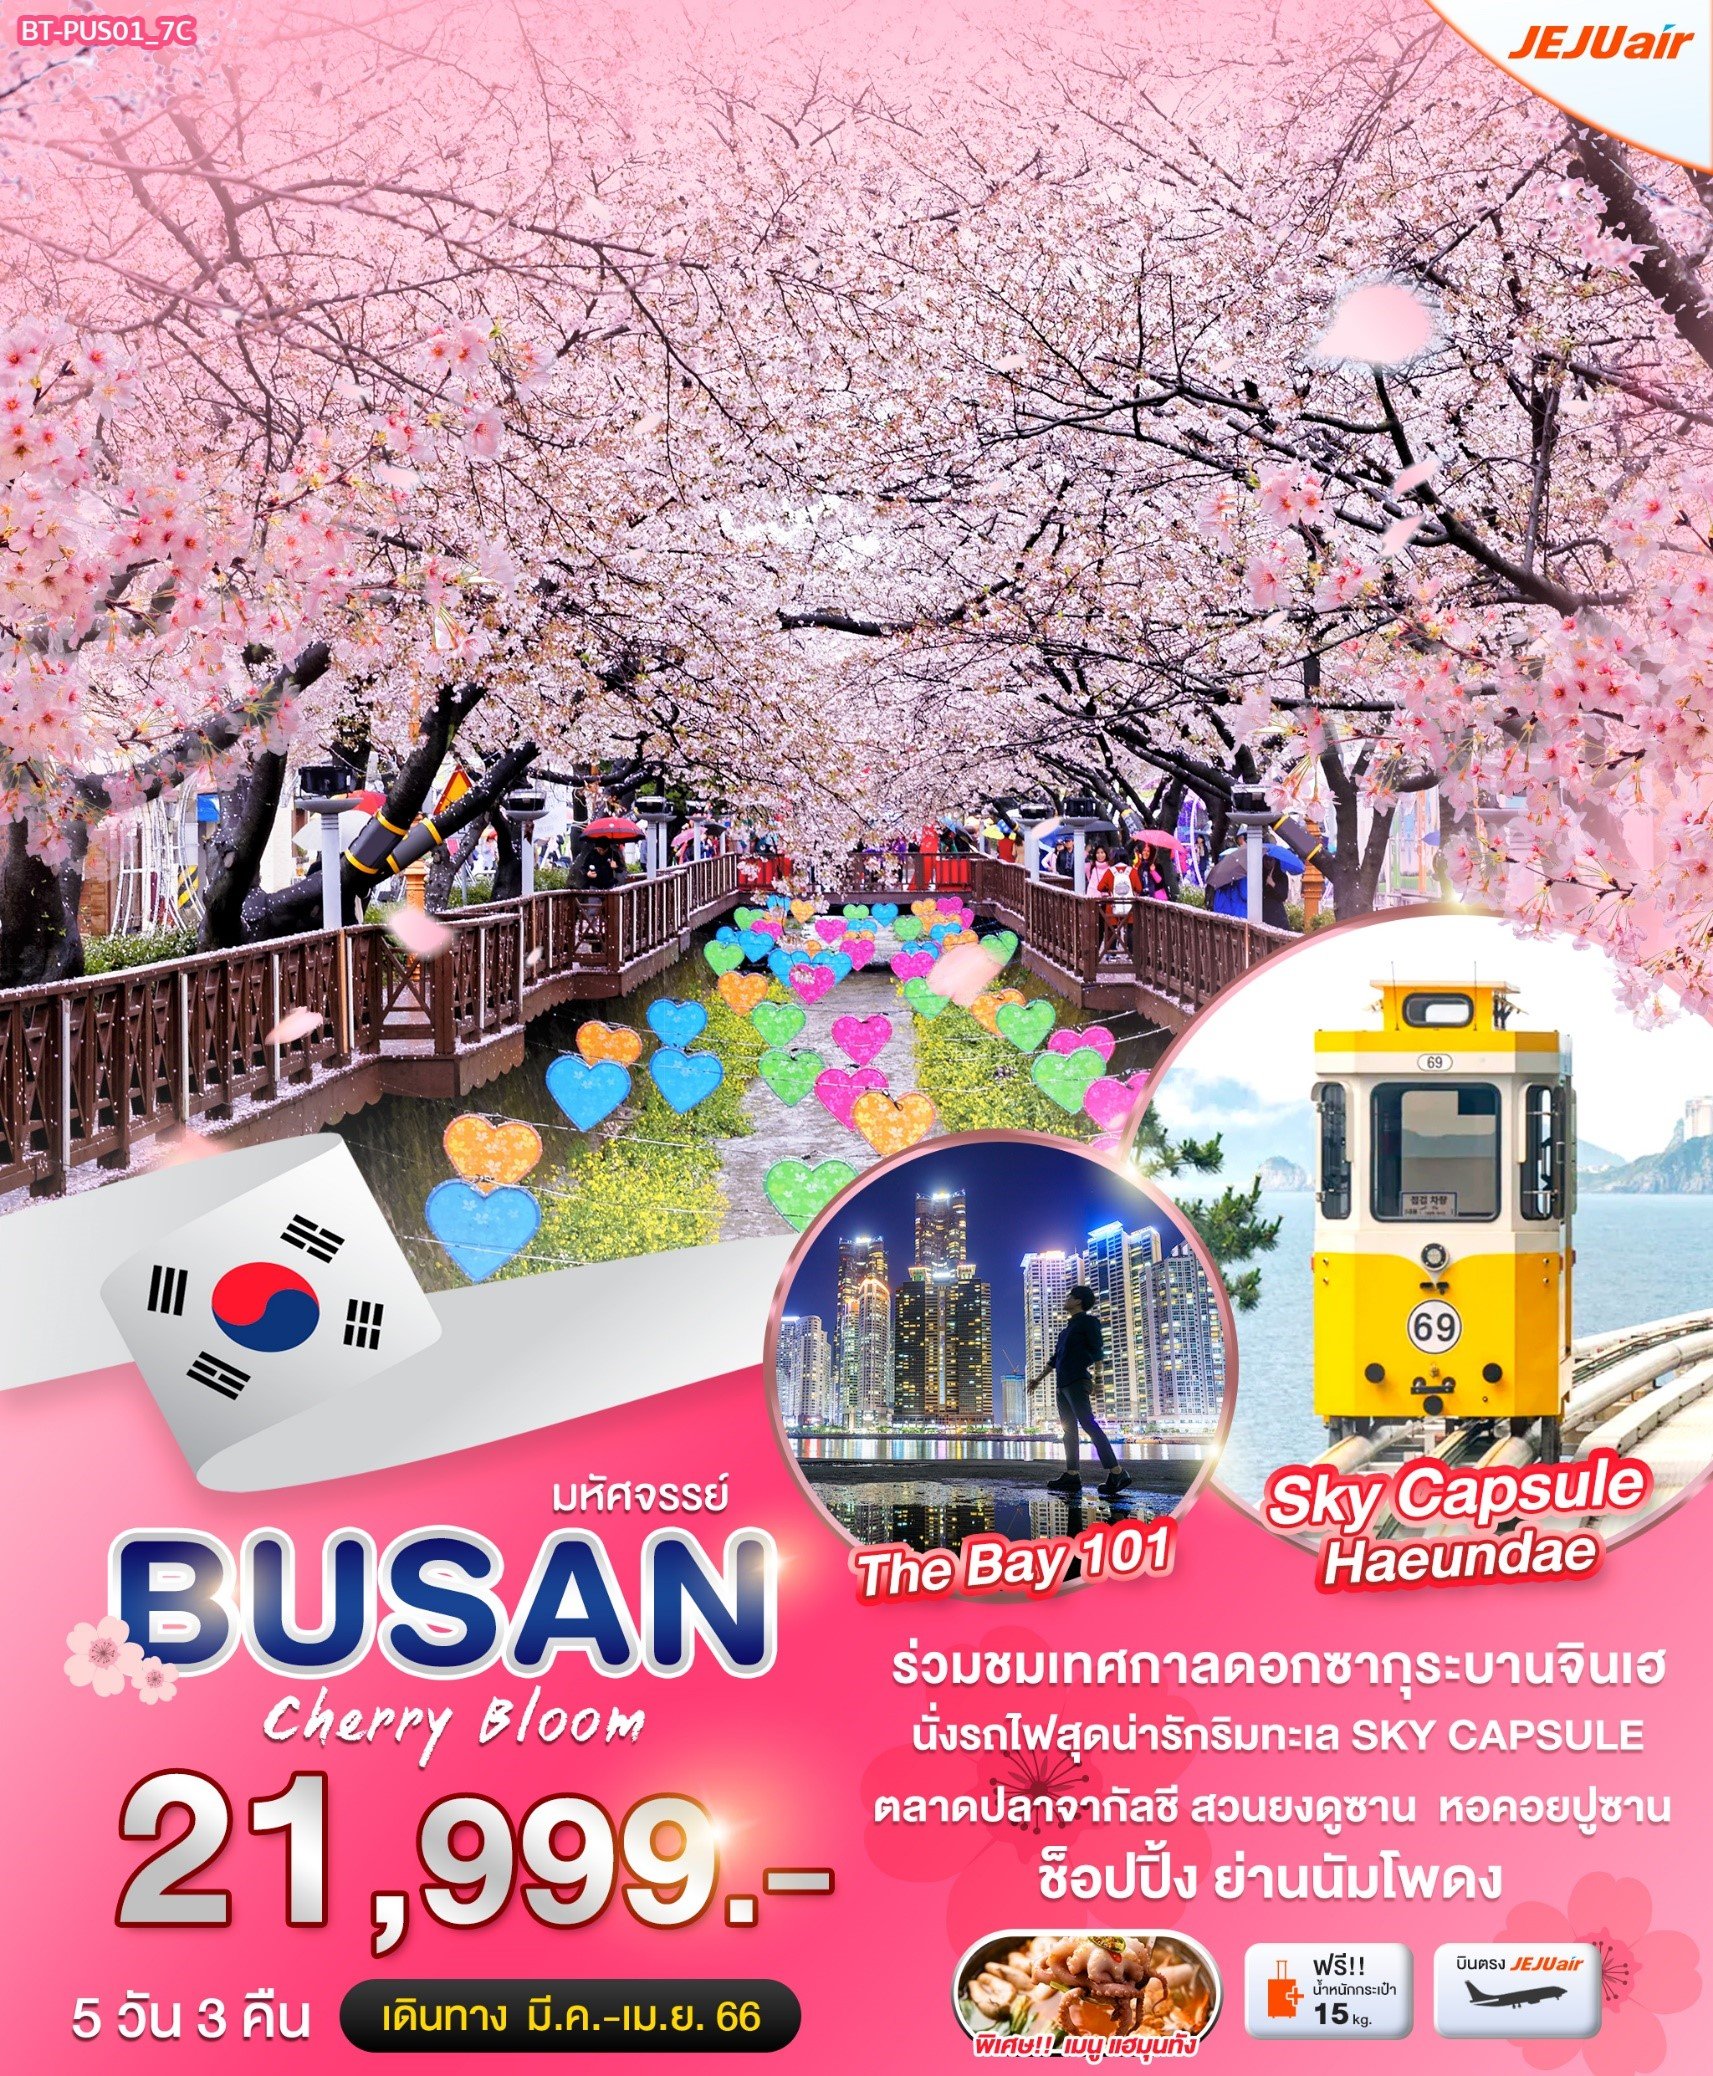 โปรแกรมทัวร์เกาหลี ปูซาน cherry bloom 5 วัน 3 คืน